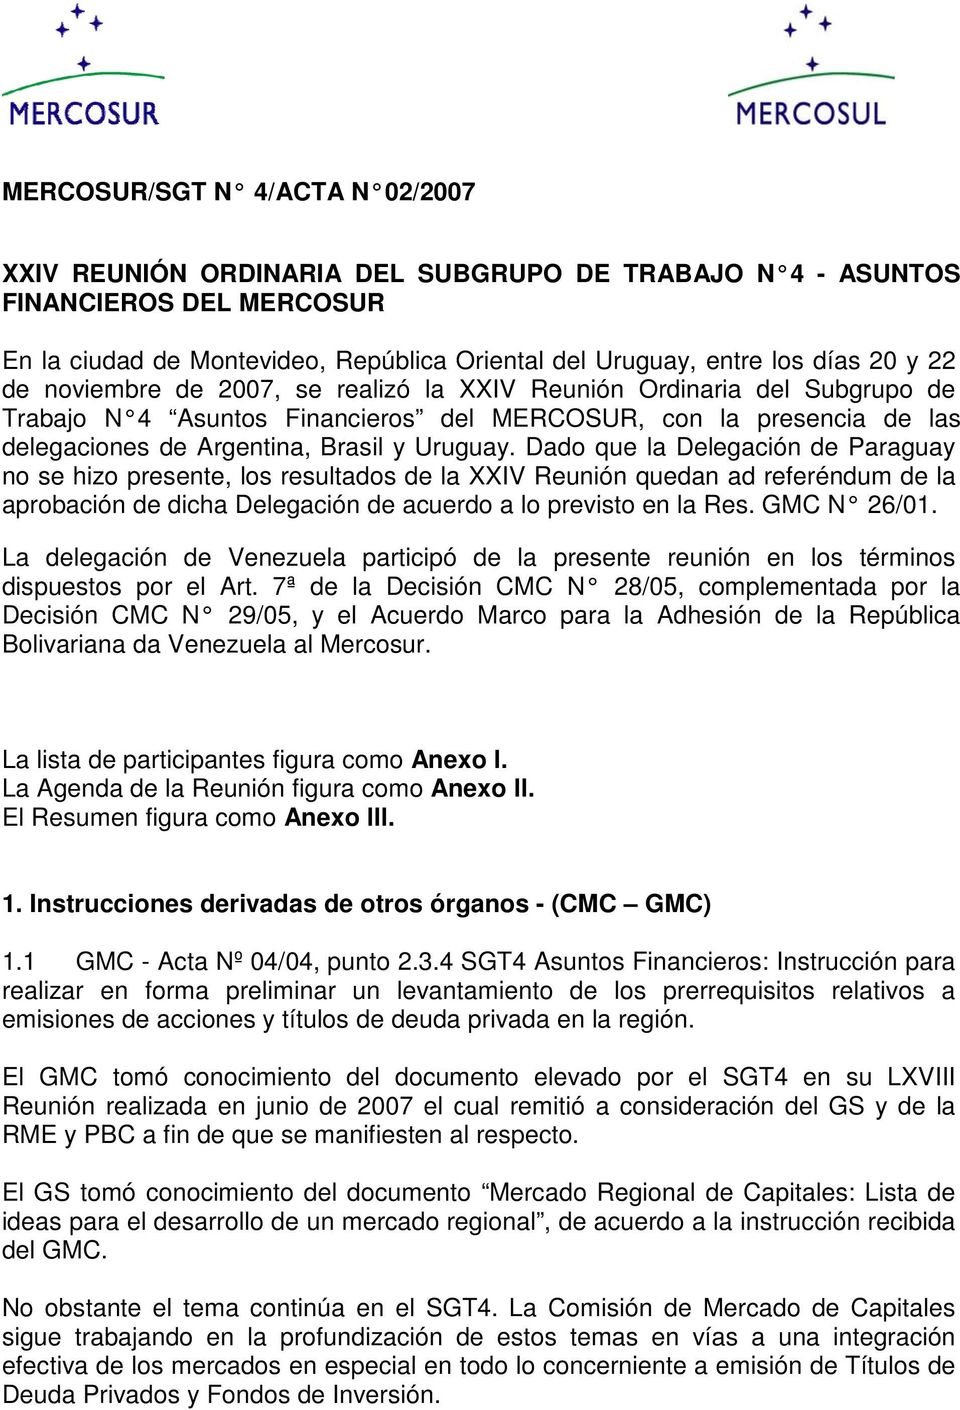 Dado que la Delegación de Paraguay no se hizo presente, los resultados de la XXIV Reunión quedan ad referéndum de la aprobación de dicha Delegación de acuerdo a lo previsto en la Res. GMC N 26/01.